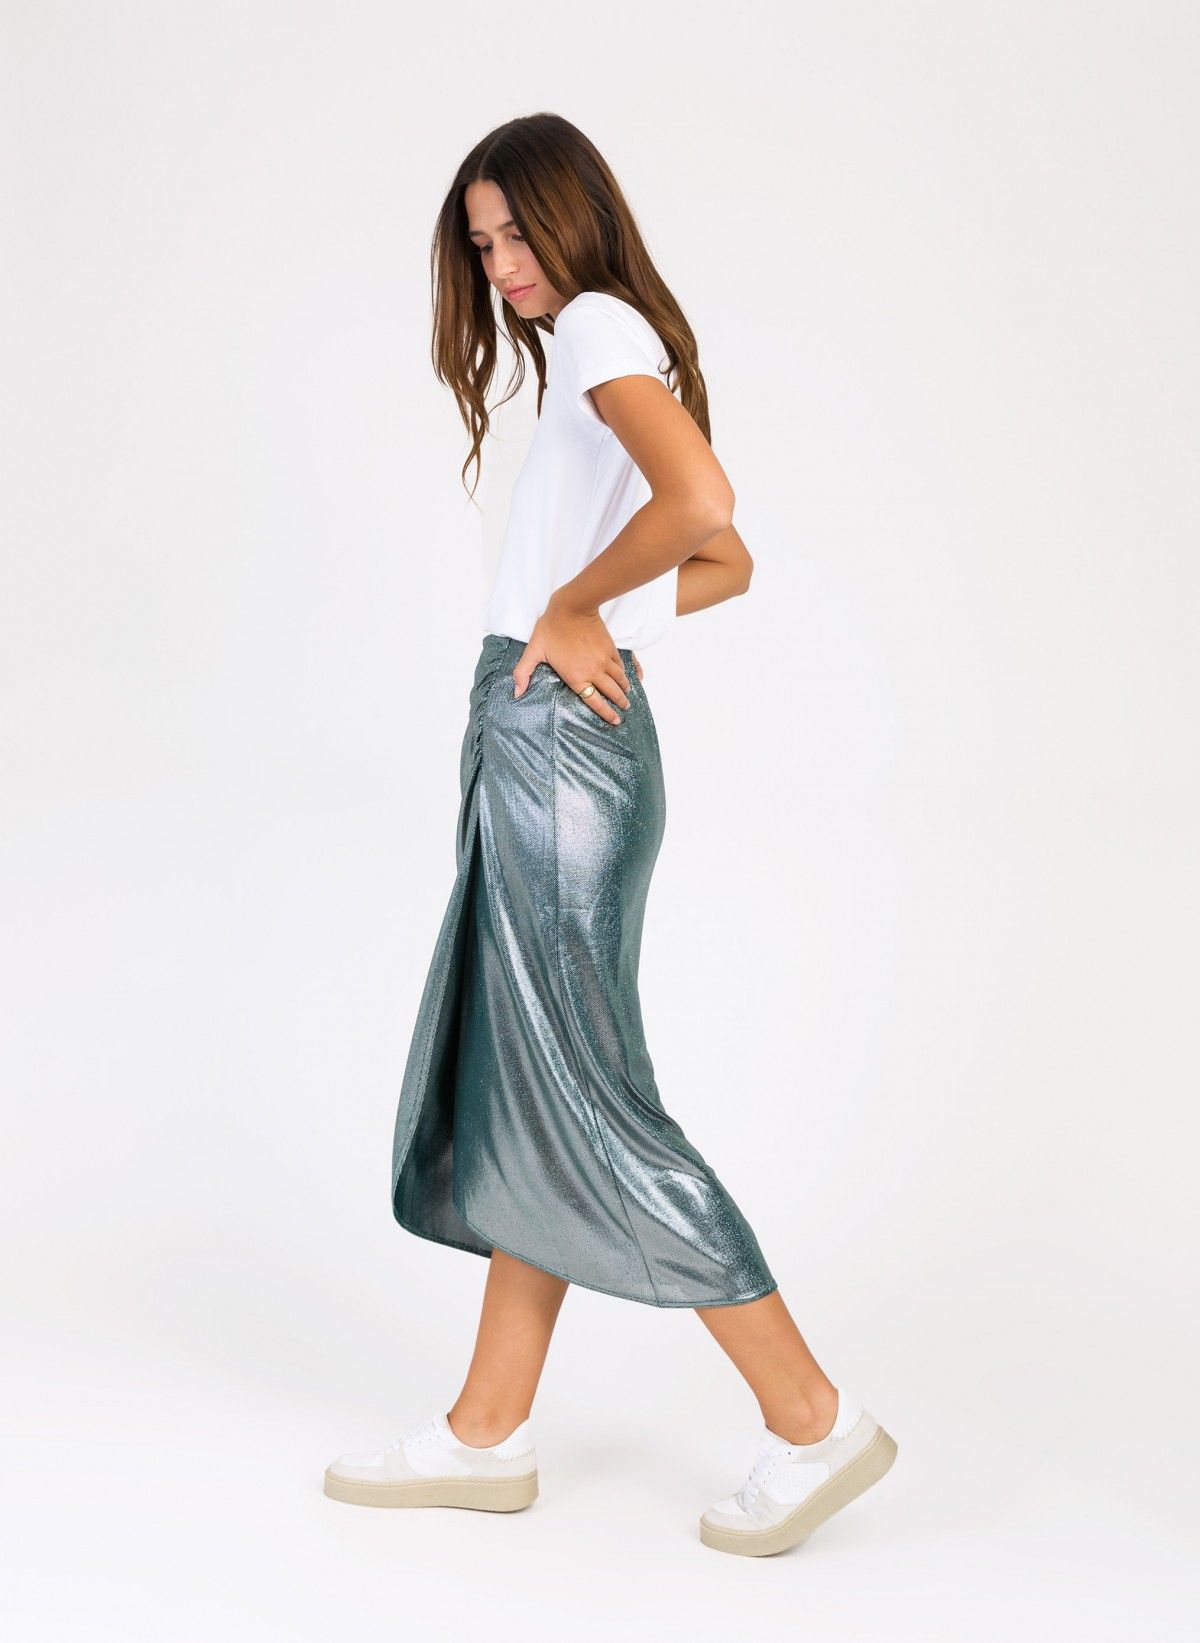 Jacksone long skirt